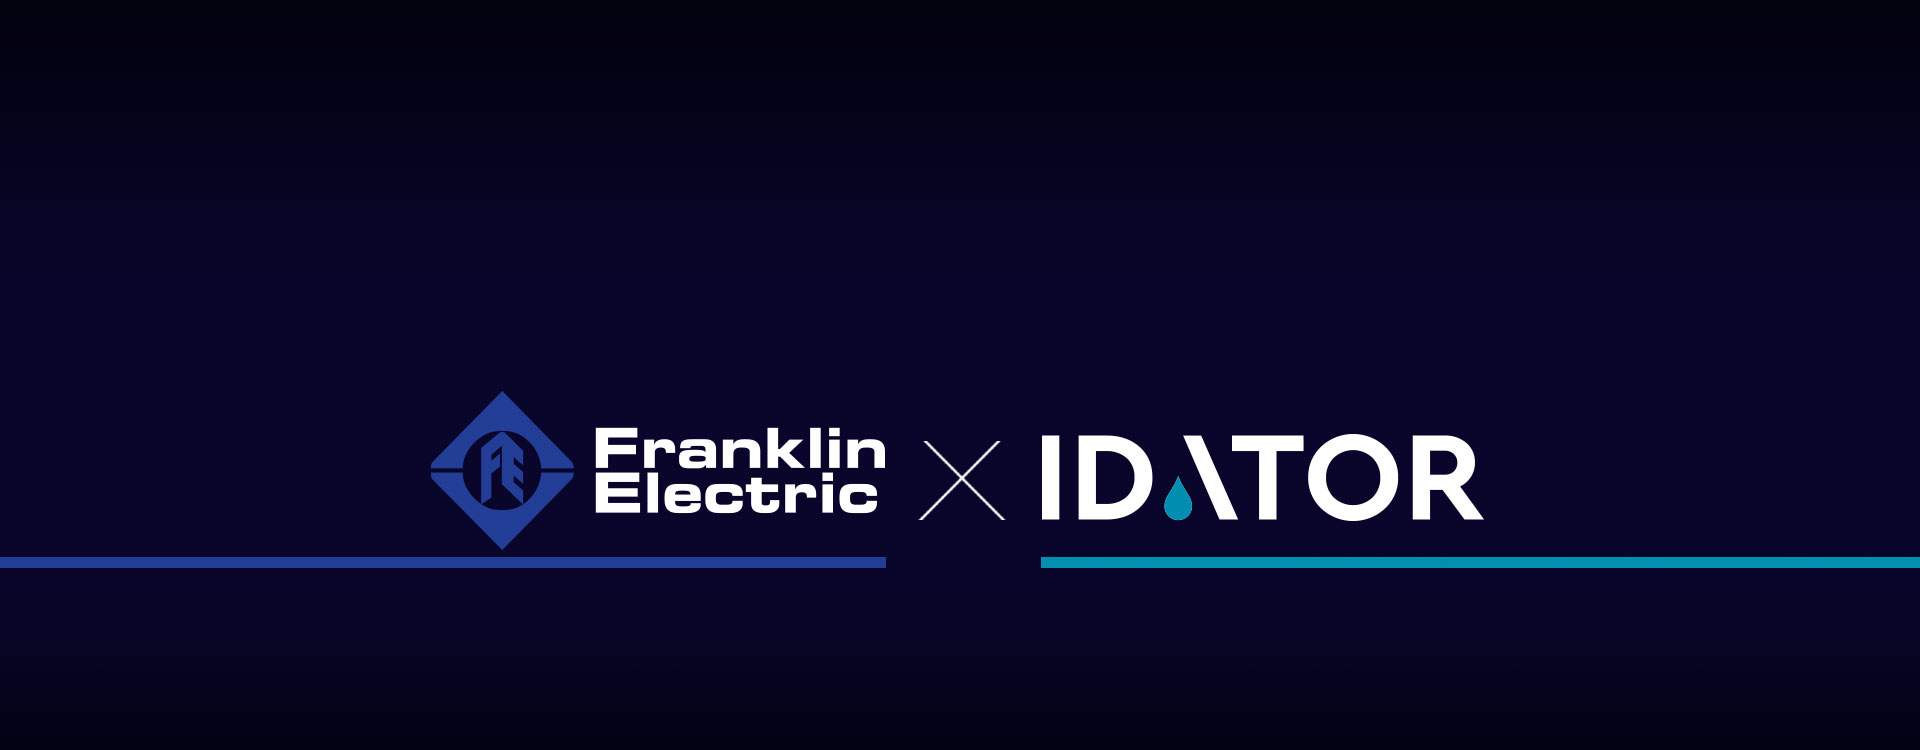 Συνεργασία Idator – Franklin Electric